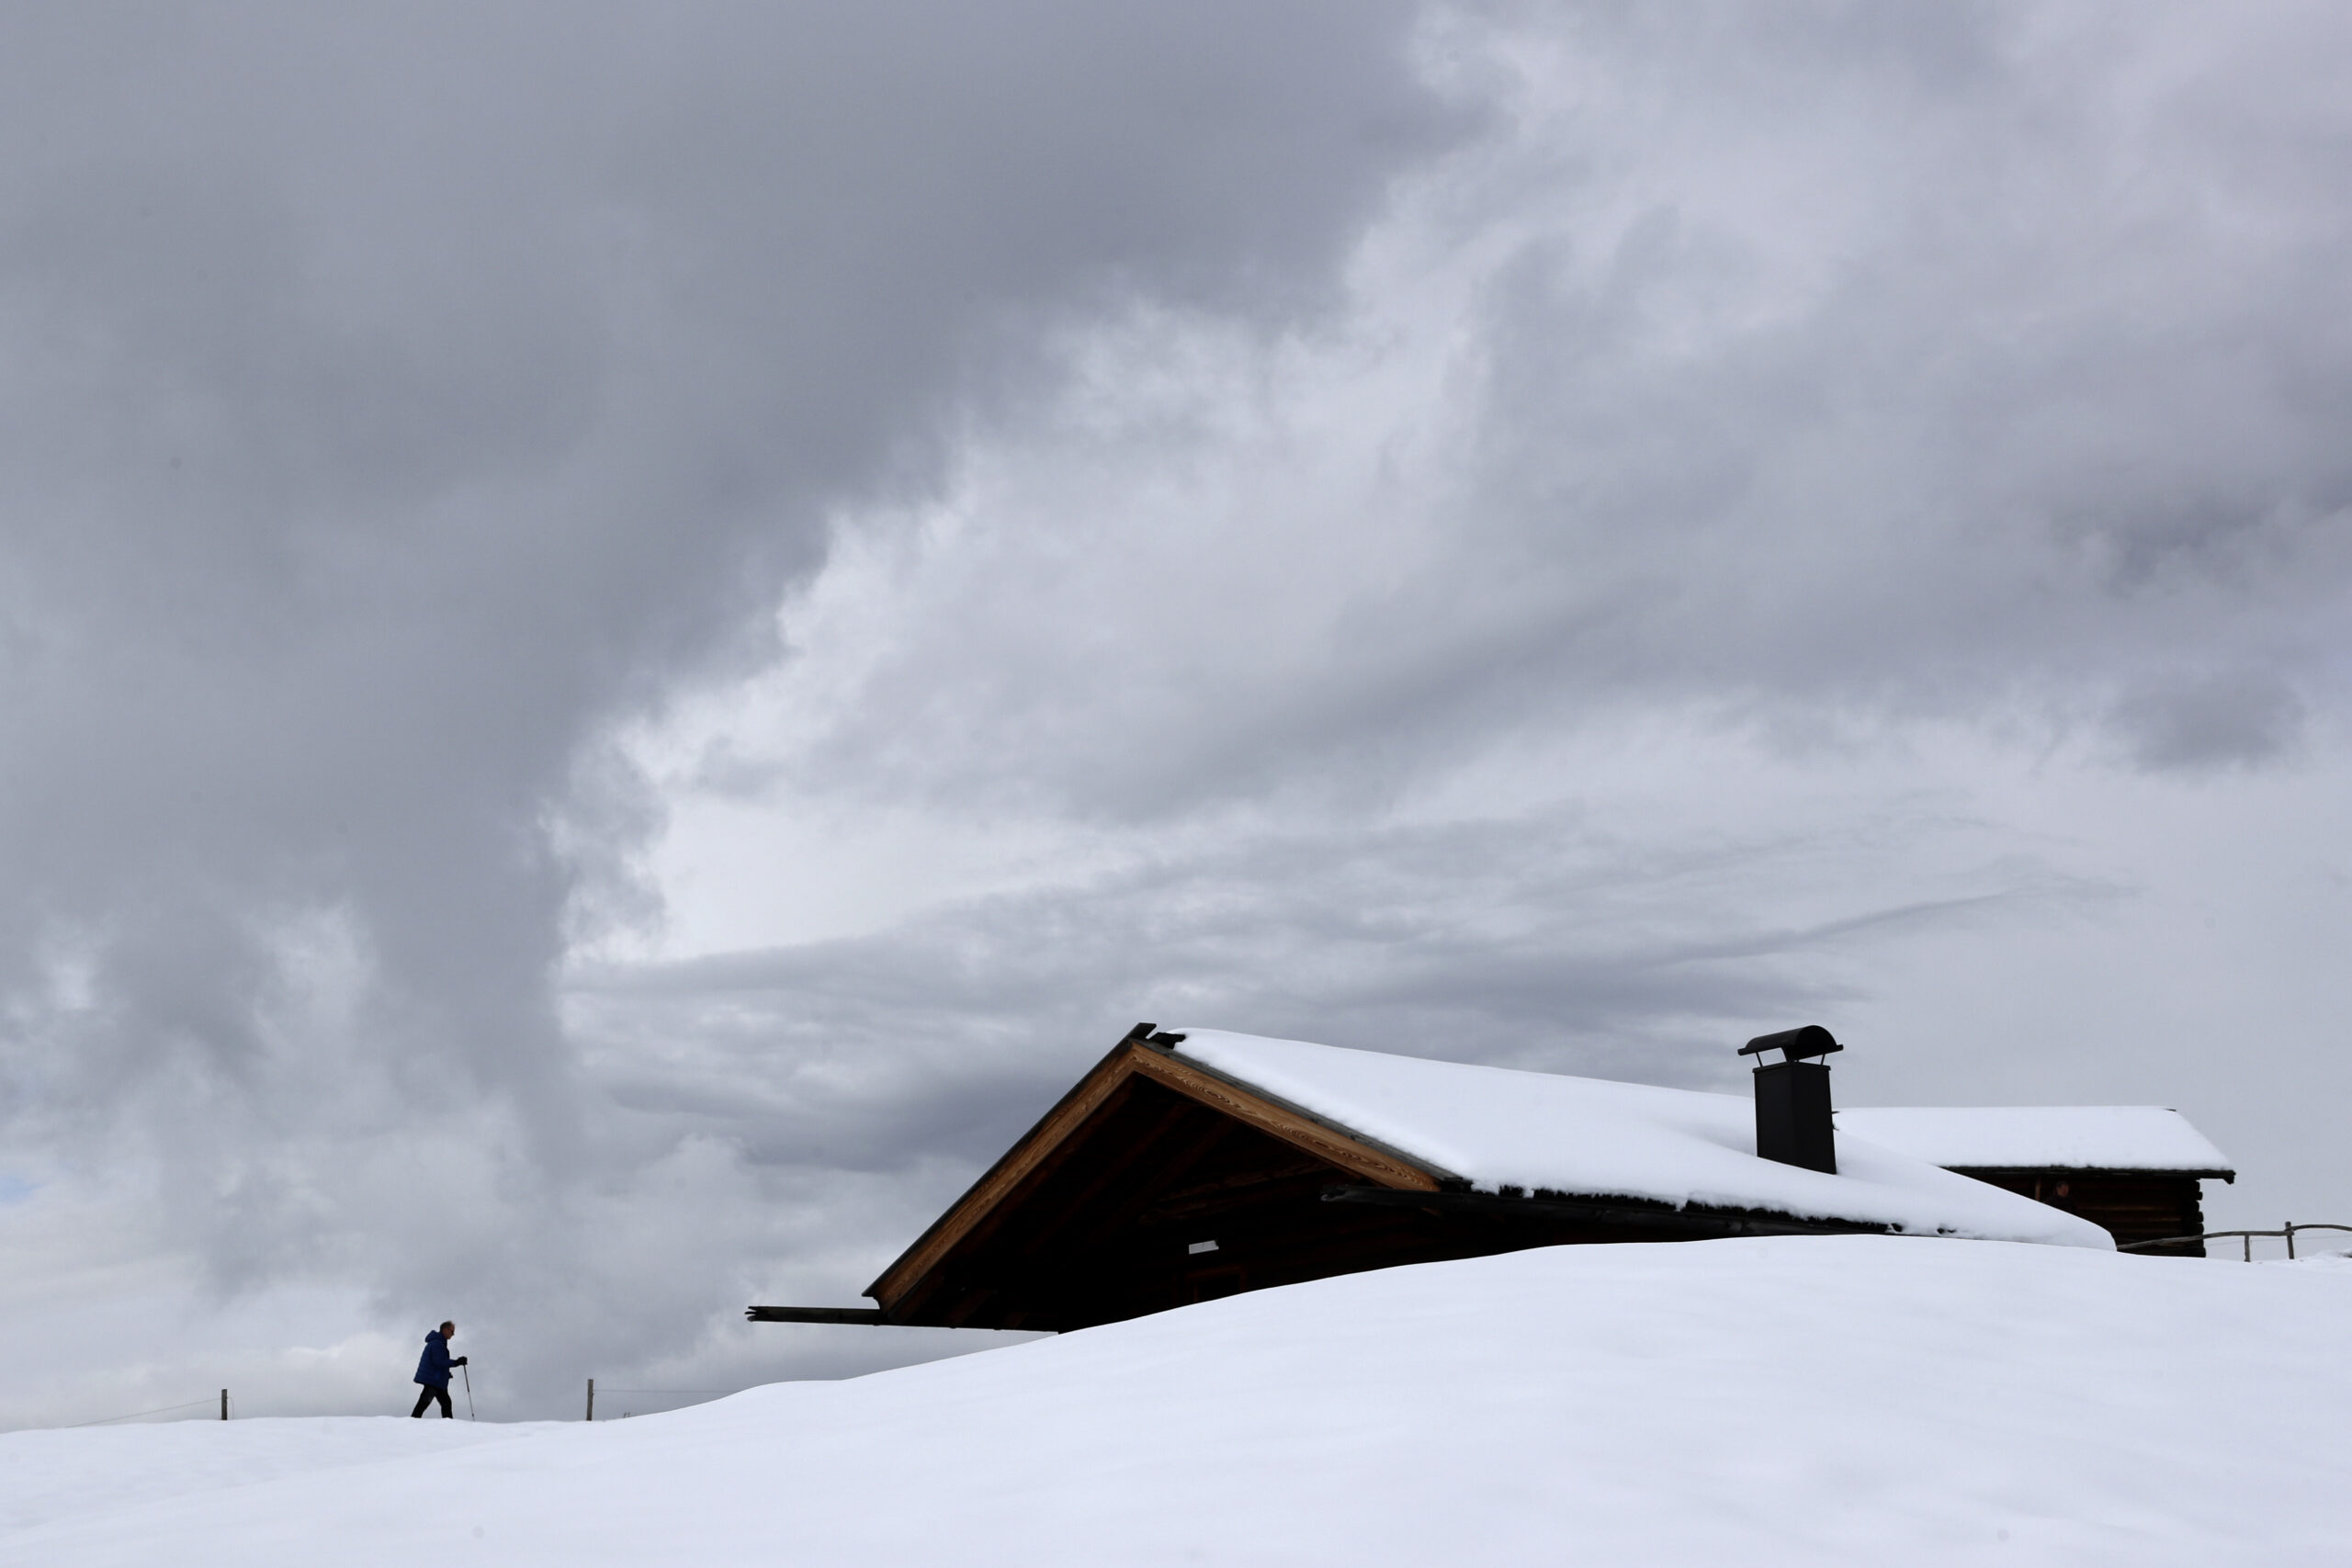 Ιταλικές Άλπεις: Χιονοστιβάδα παρέσυρε ομάδα ορειβατών – Τρεις αγνοούμενοι